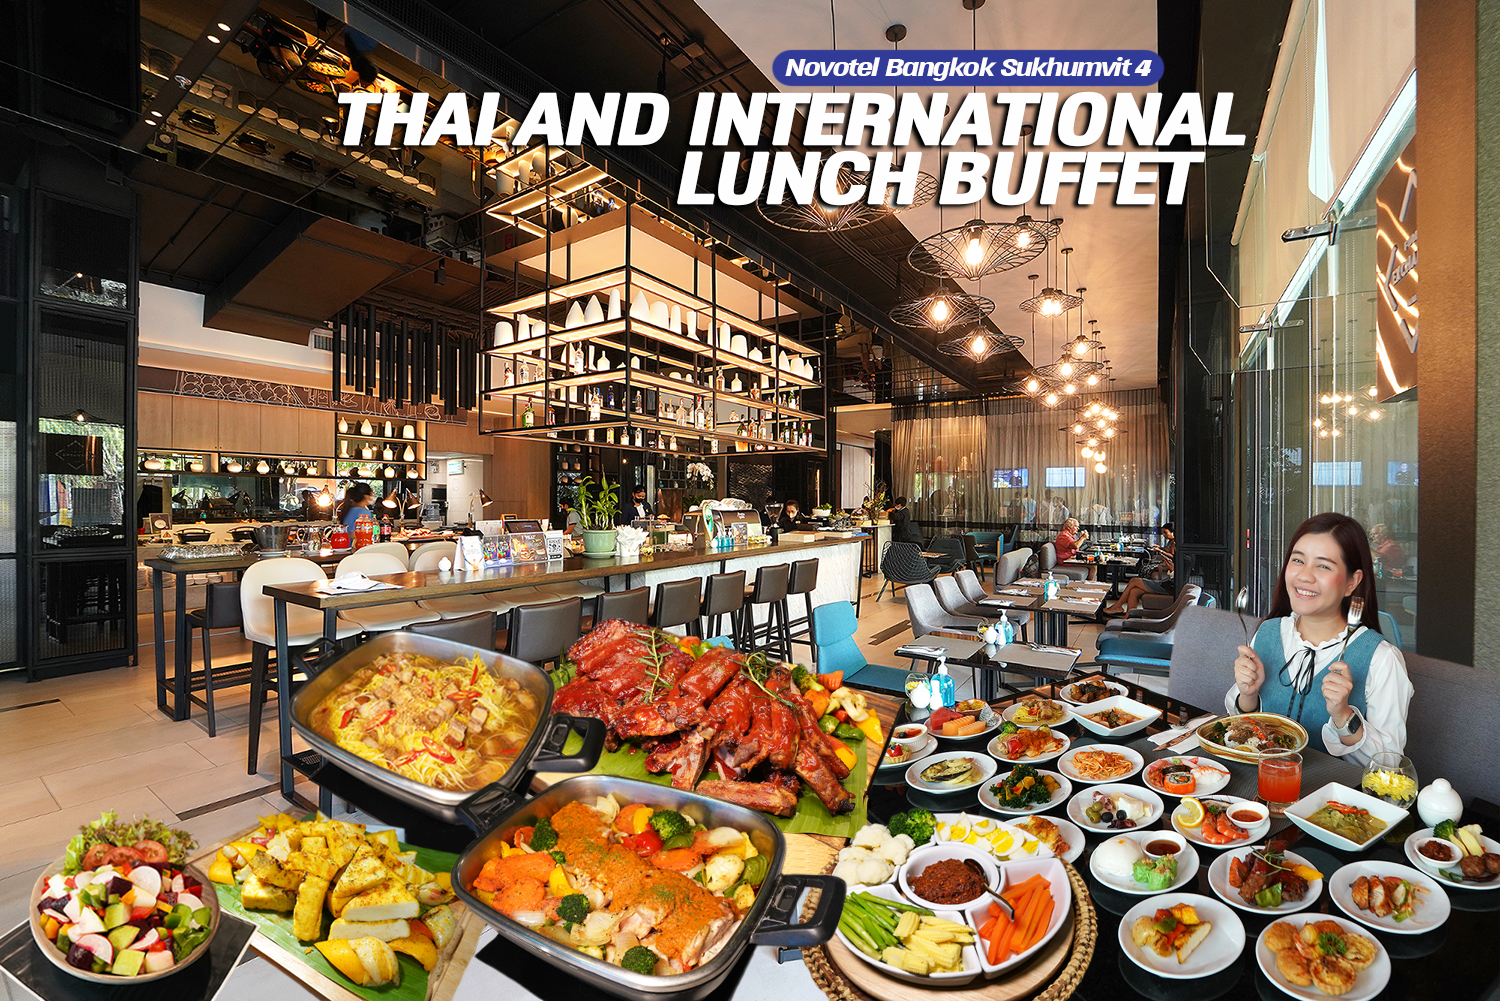 บุฟเฟ่ต์อาหารไทยและอาหารนานาชาติ มื้อกลางวันสุดคุ้ม Food Exchange โรงแรมแรมโนโวเทล กรุงเทพ สุขุมวิท 4 ไปกินกันมะ